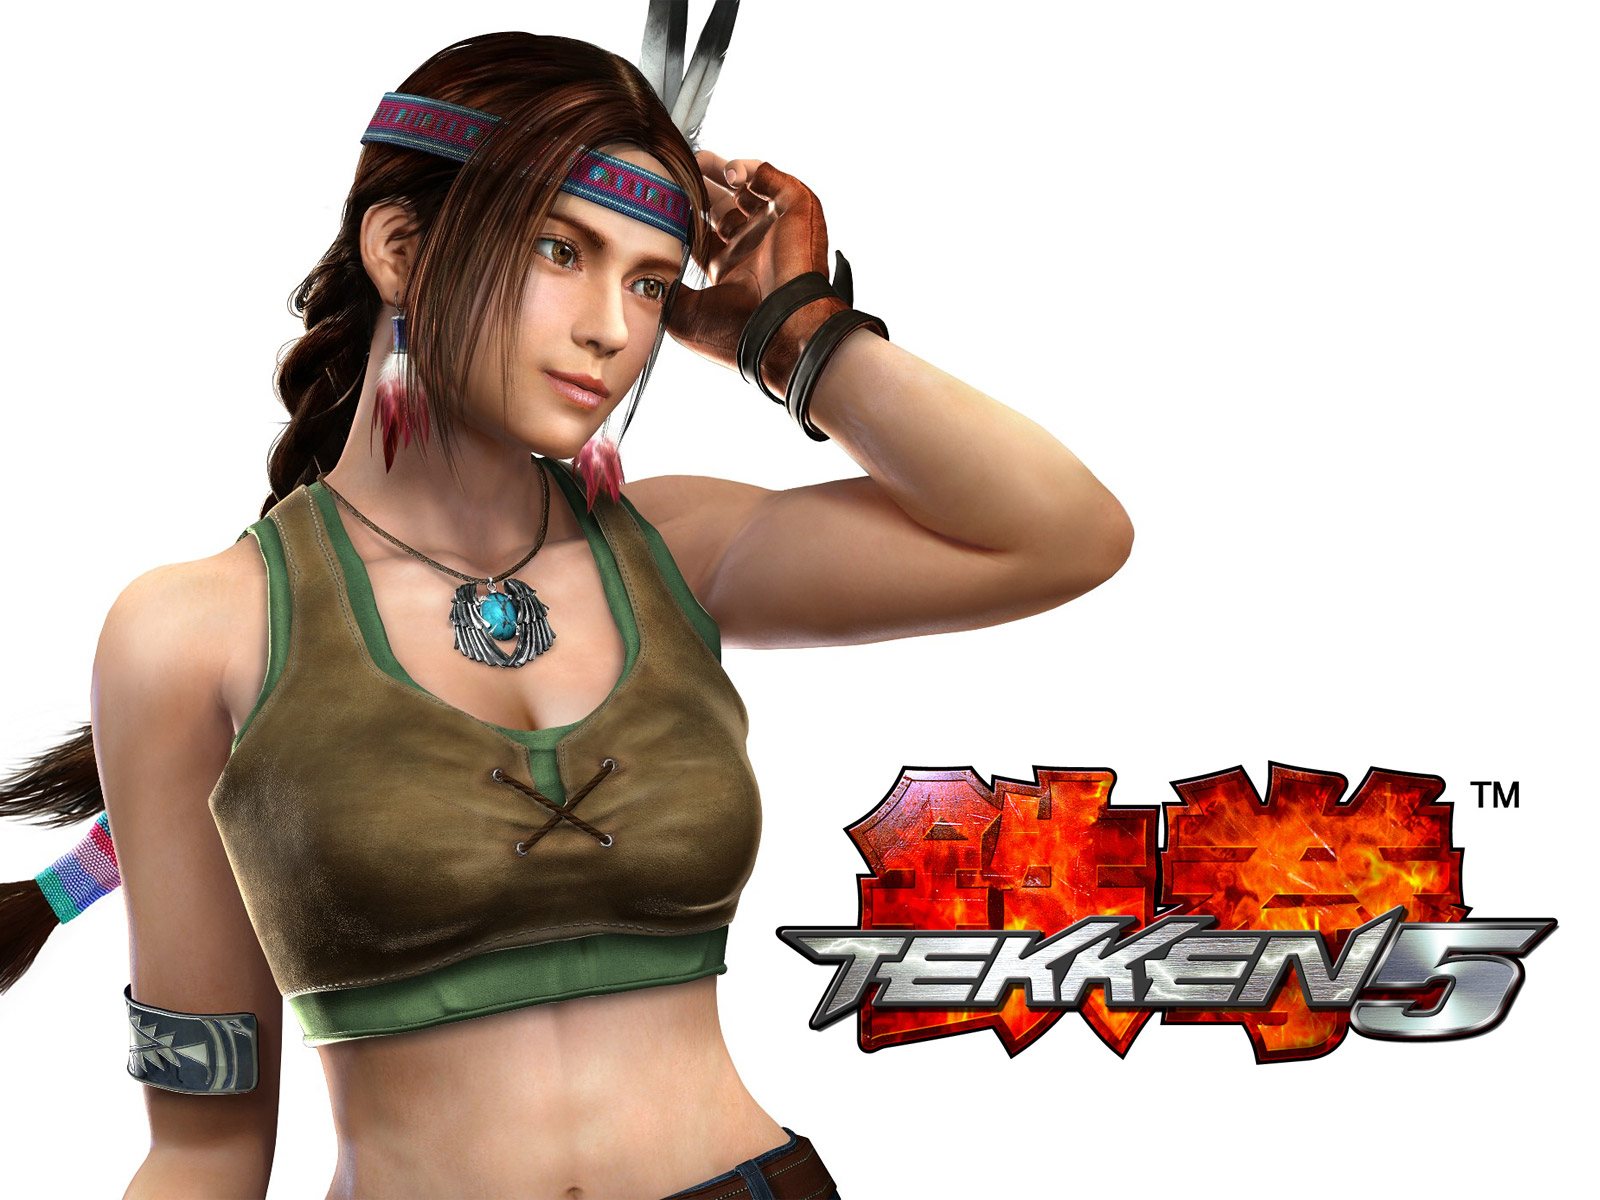 A fierce woman warrior, Julia Chang, ready for combat in Tekken 5.